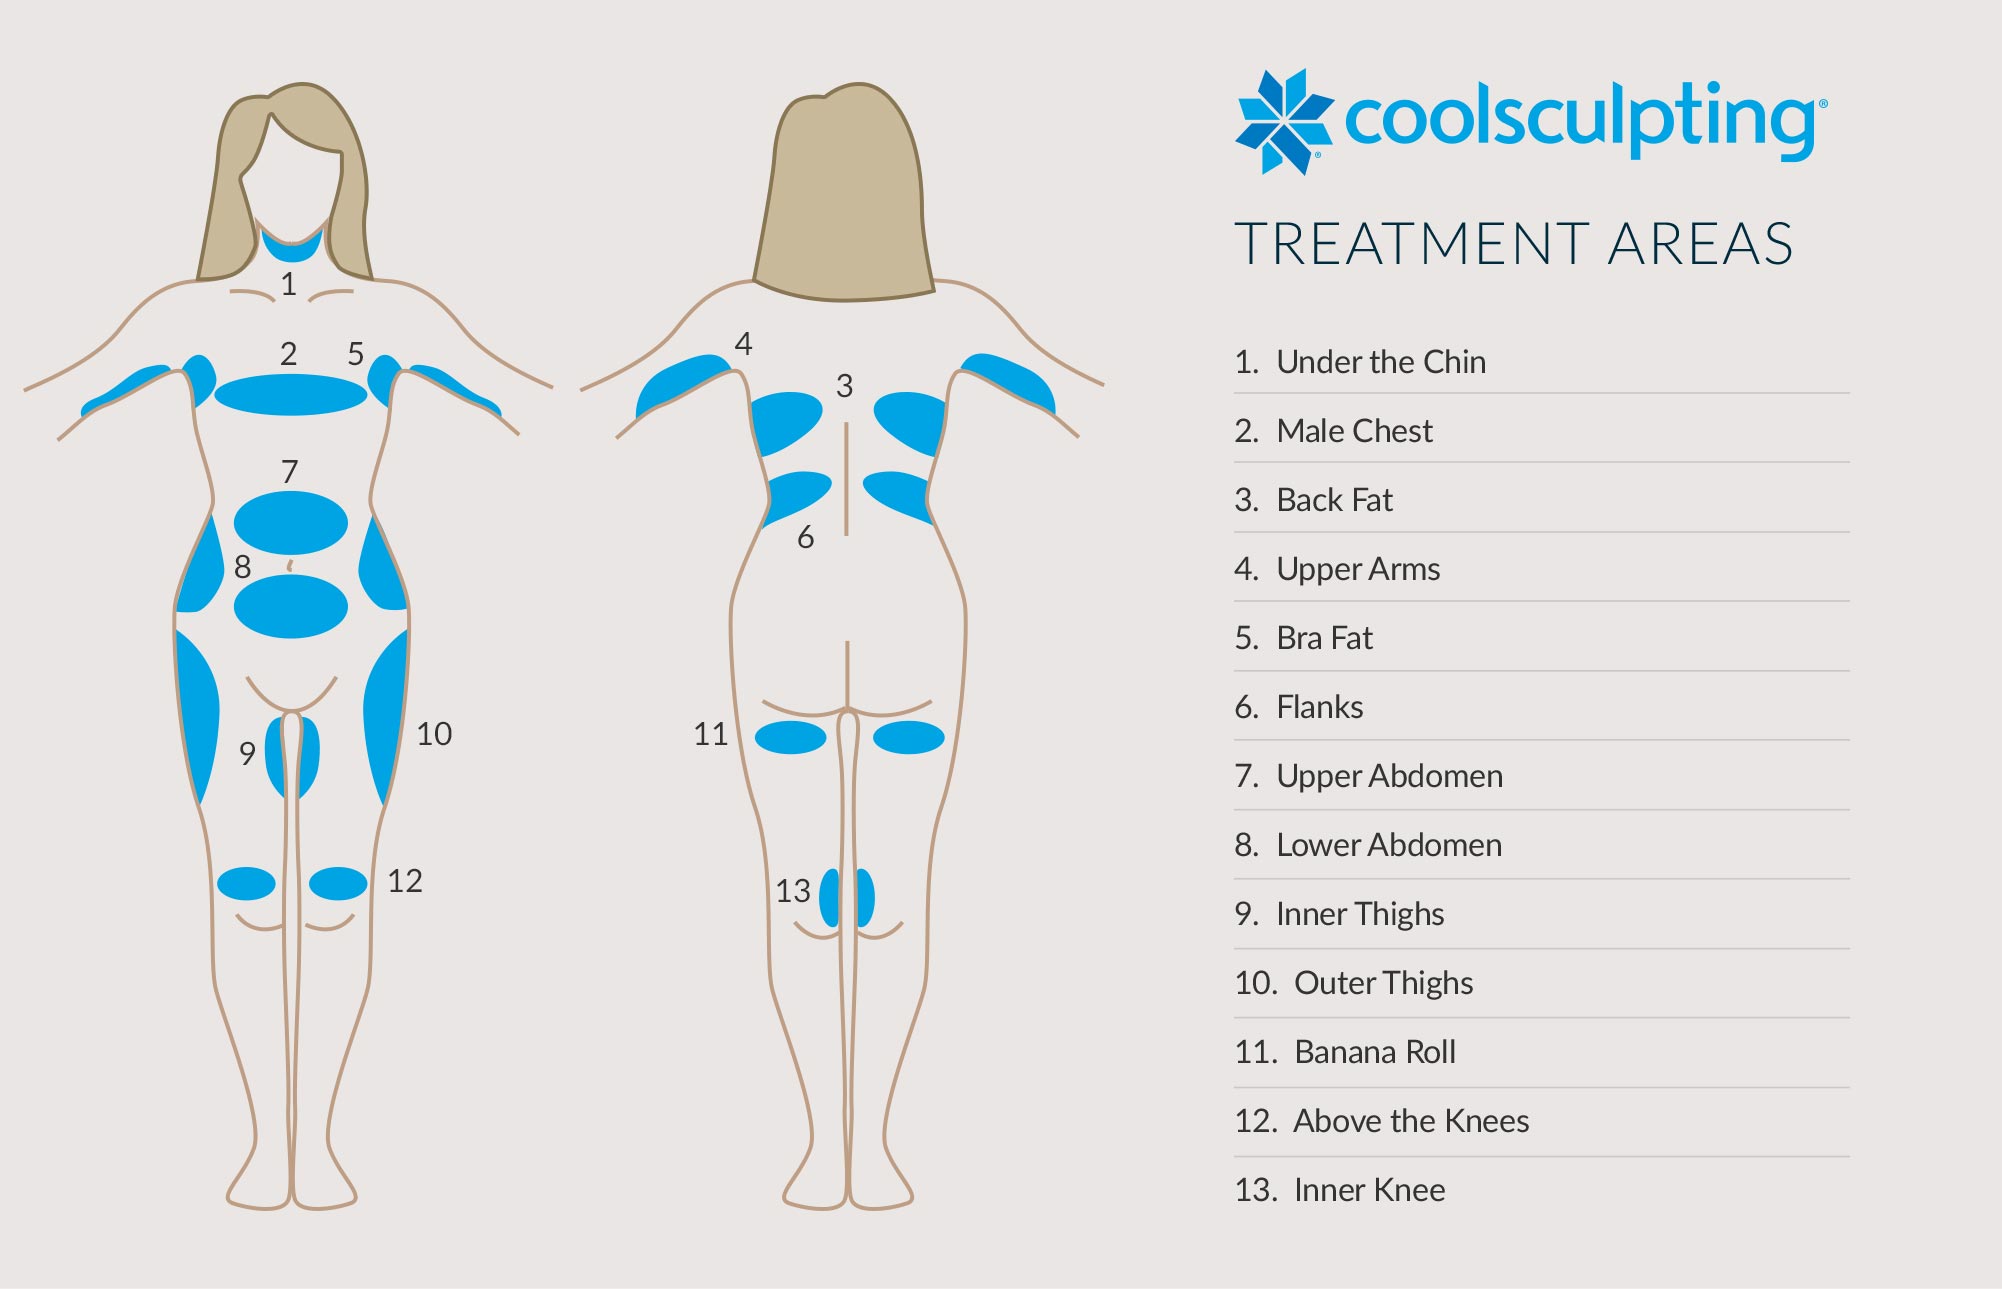 áreas de tratamiento de coolsculpting